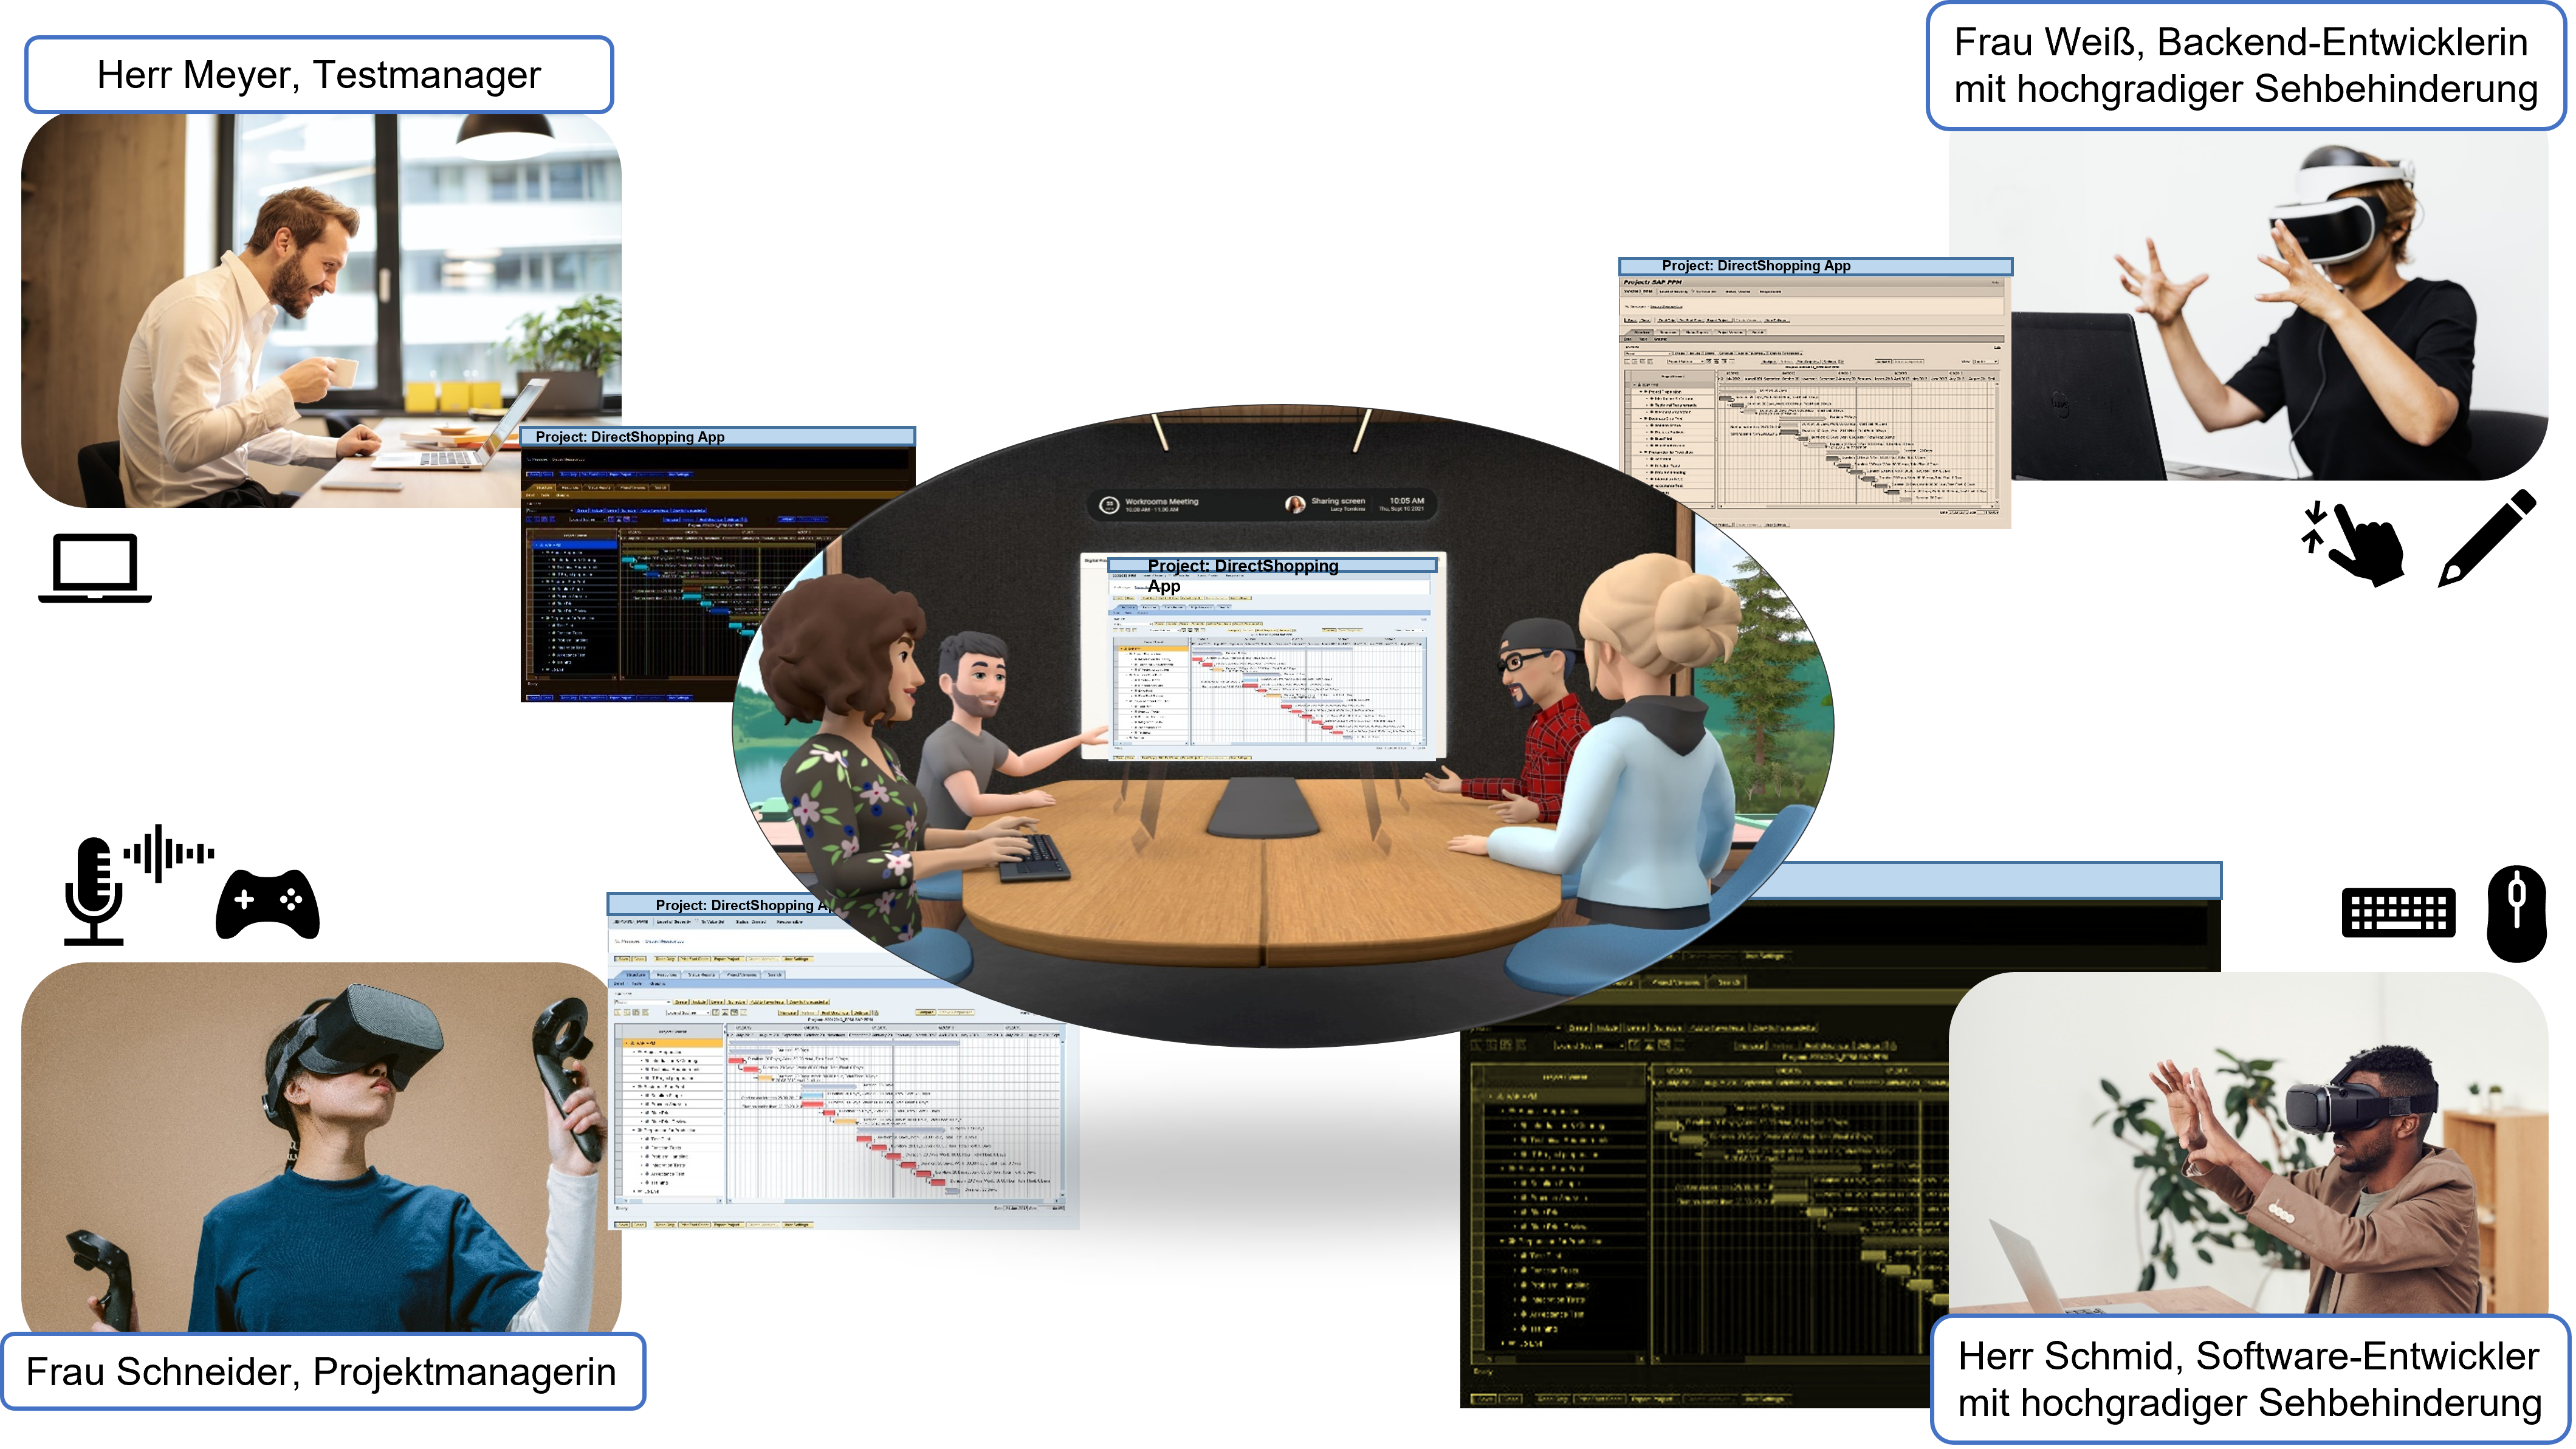 Das folgende Bild zeigt ein Szenario, in dem vier Personen in VR an einem Projektmanagement-Tool zusammenarbeiten. 